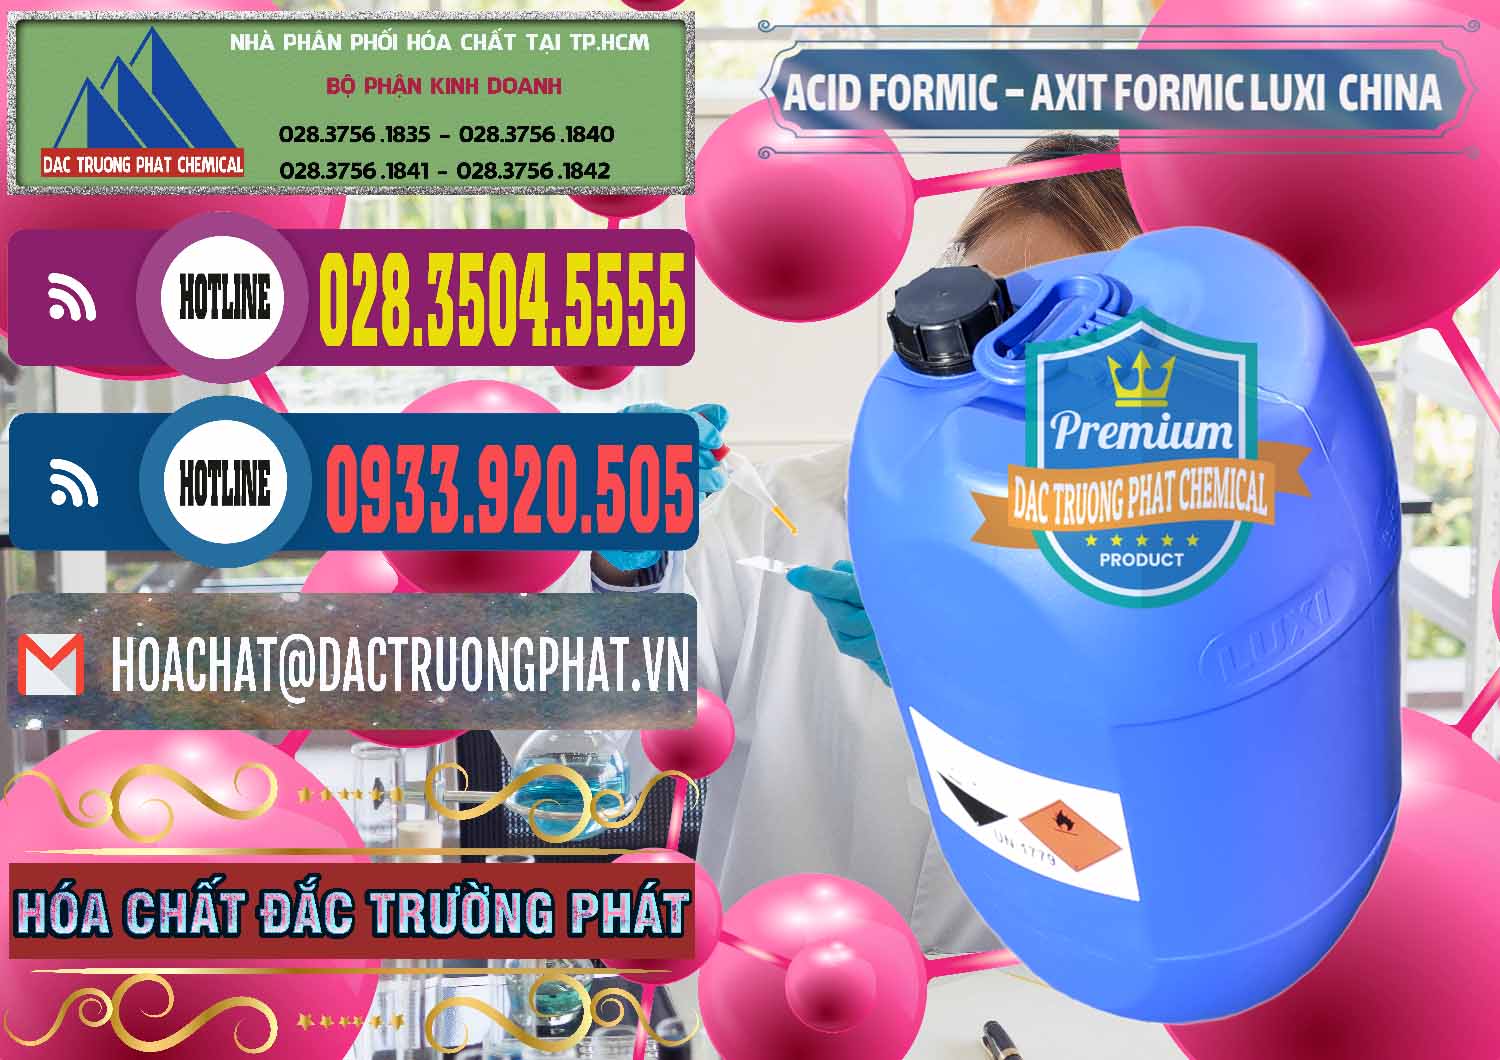 Cty chuyên cung cấp _ bán Acid Formic - Axit Formic Luxi Trung Quốc China - 0029 - Phân phối _ bán hóa chất tại TP.HCM - muabanhoachat.com.vn